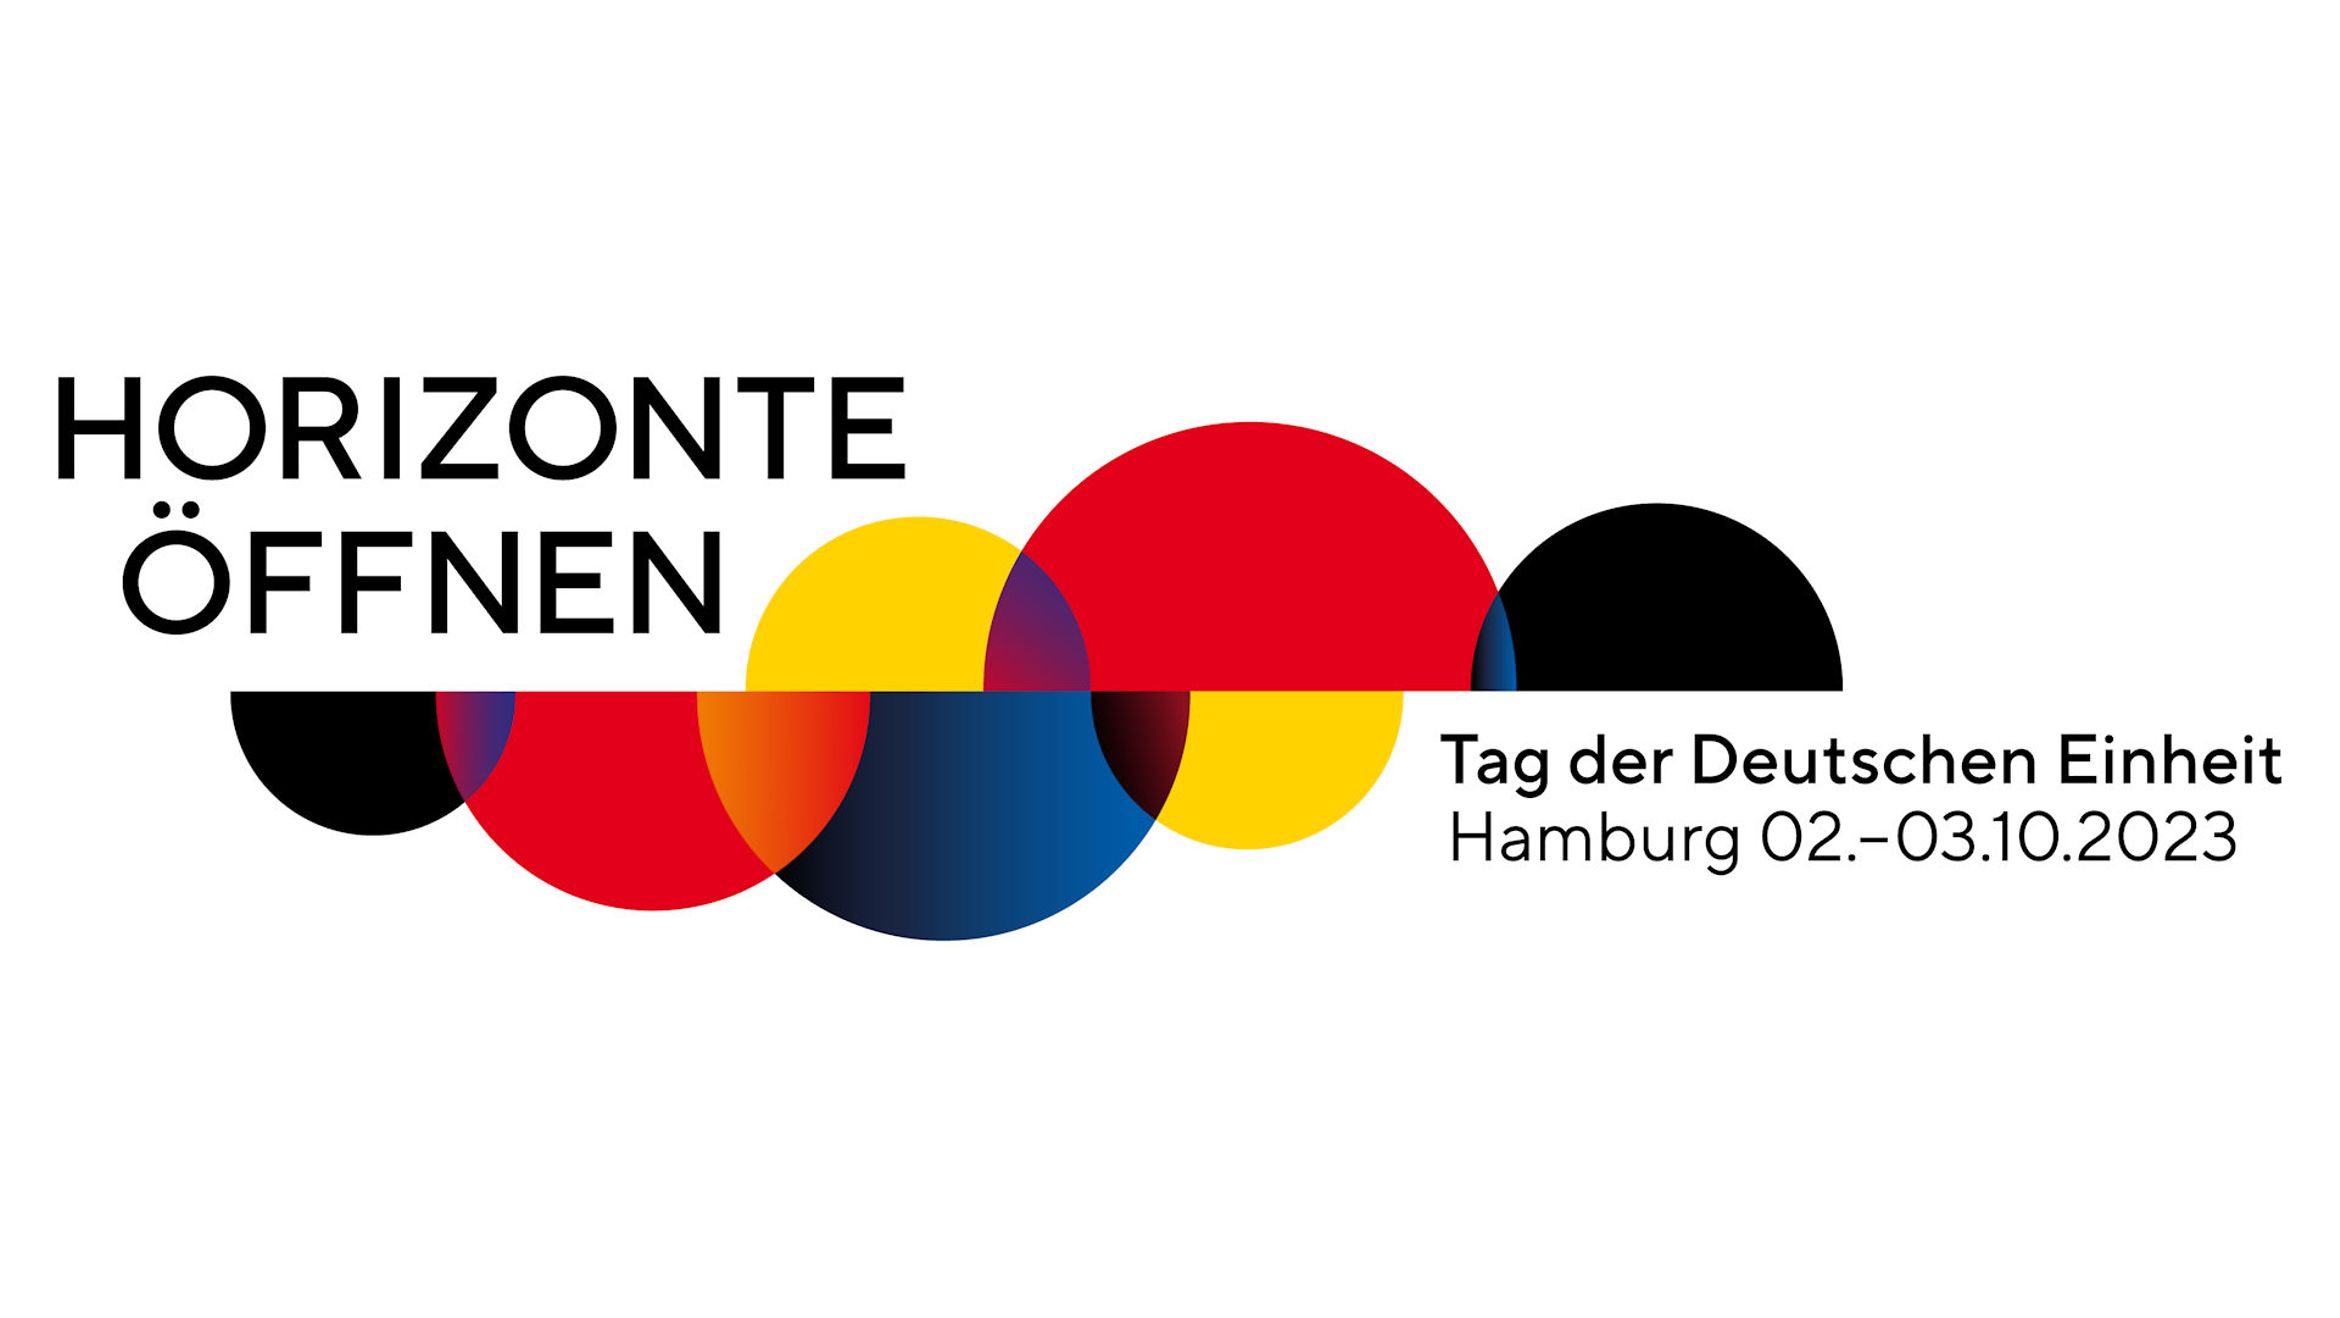 Logo zum Tag der Deutschen Einheit 2023 in Hamburg unter dem Motto Horizonte öffnen.